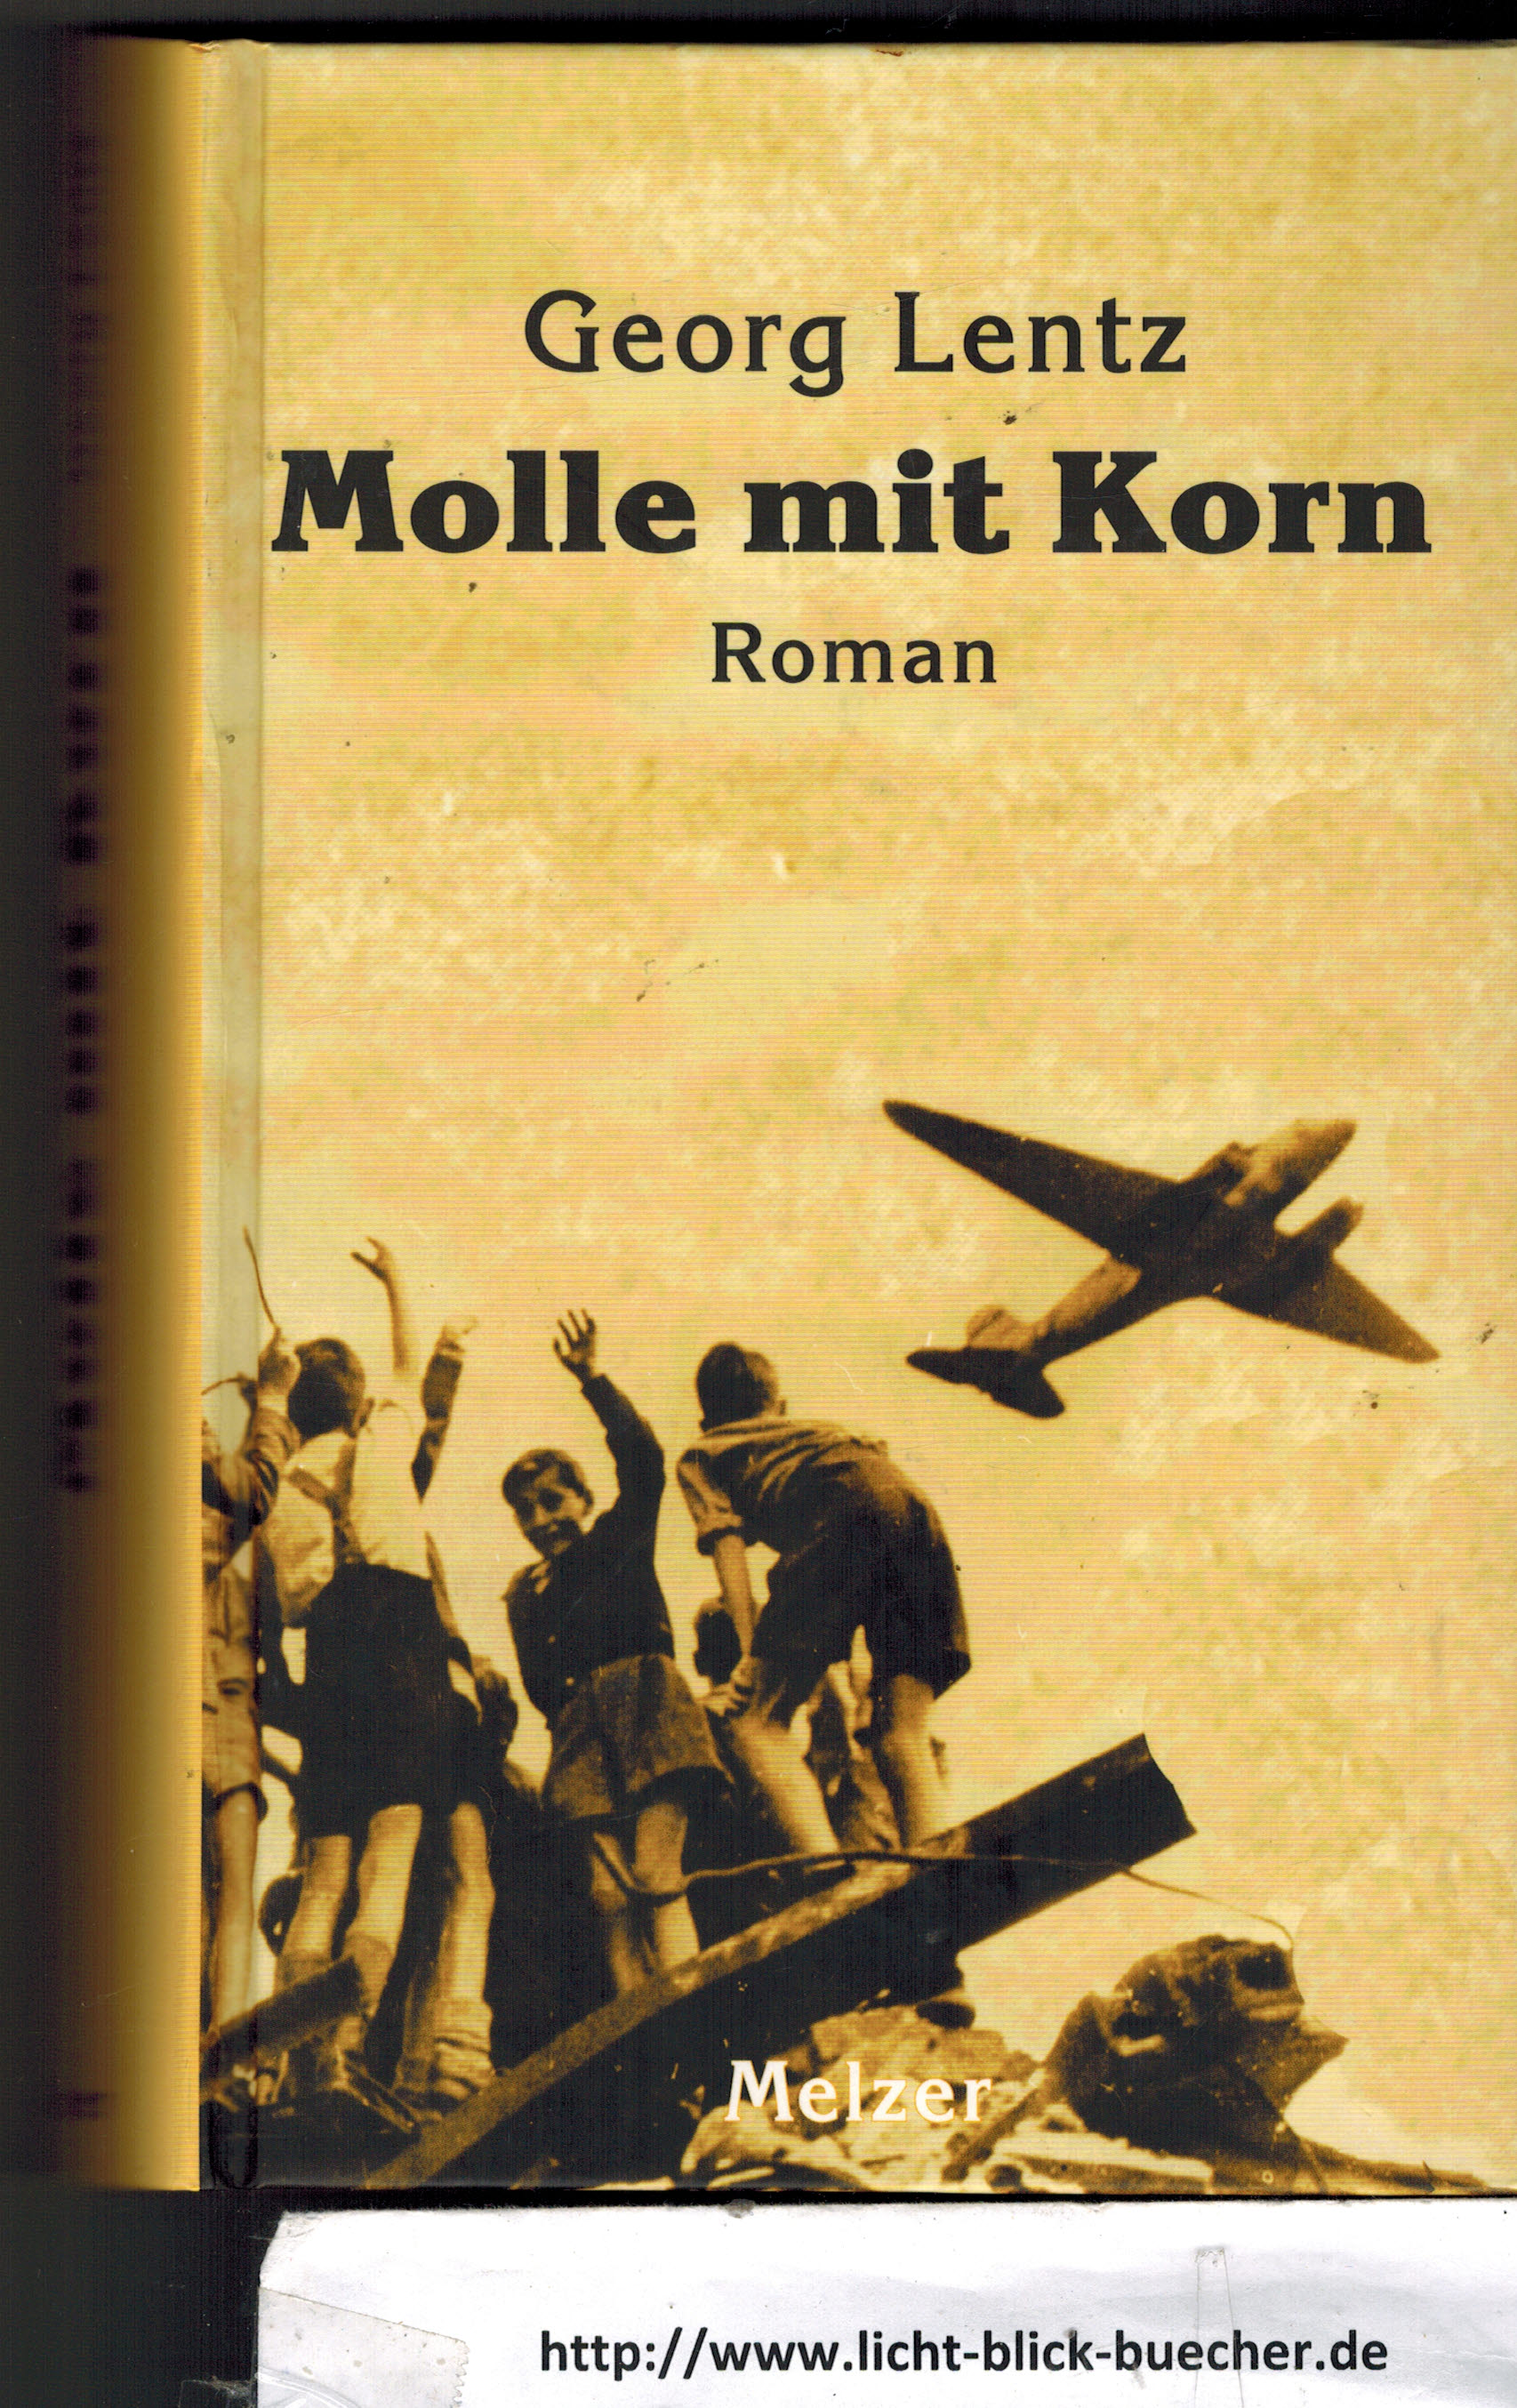 Molle mit Korn  Georg Lentz